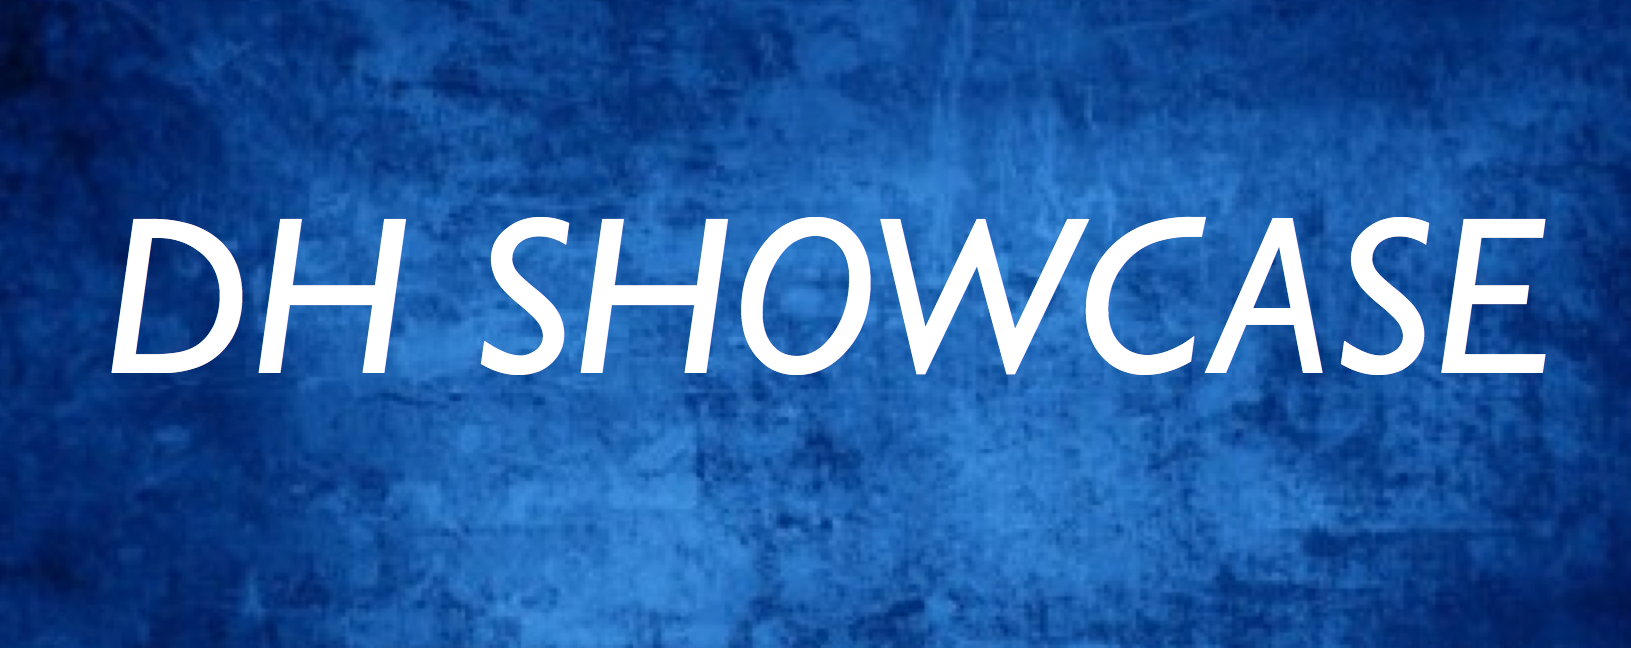 dh-showcase-2015-banner